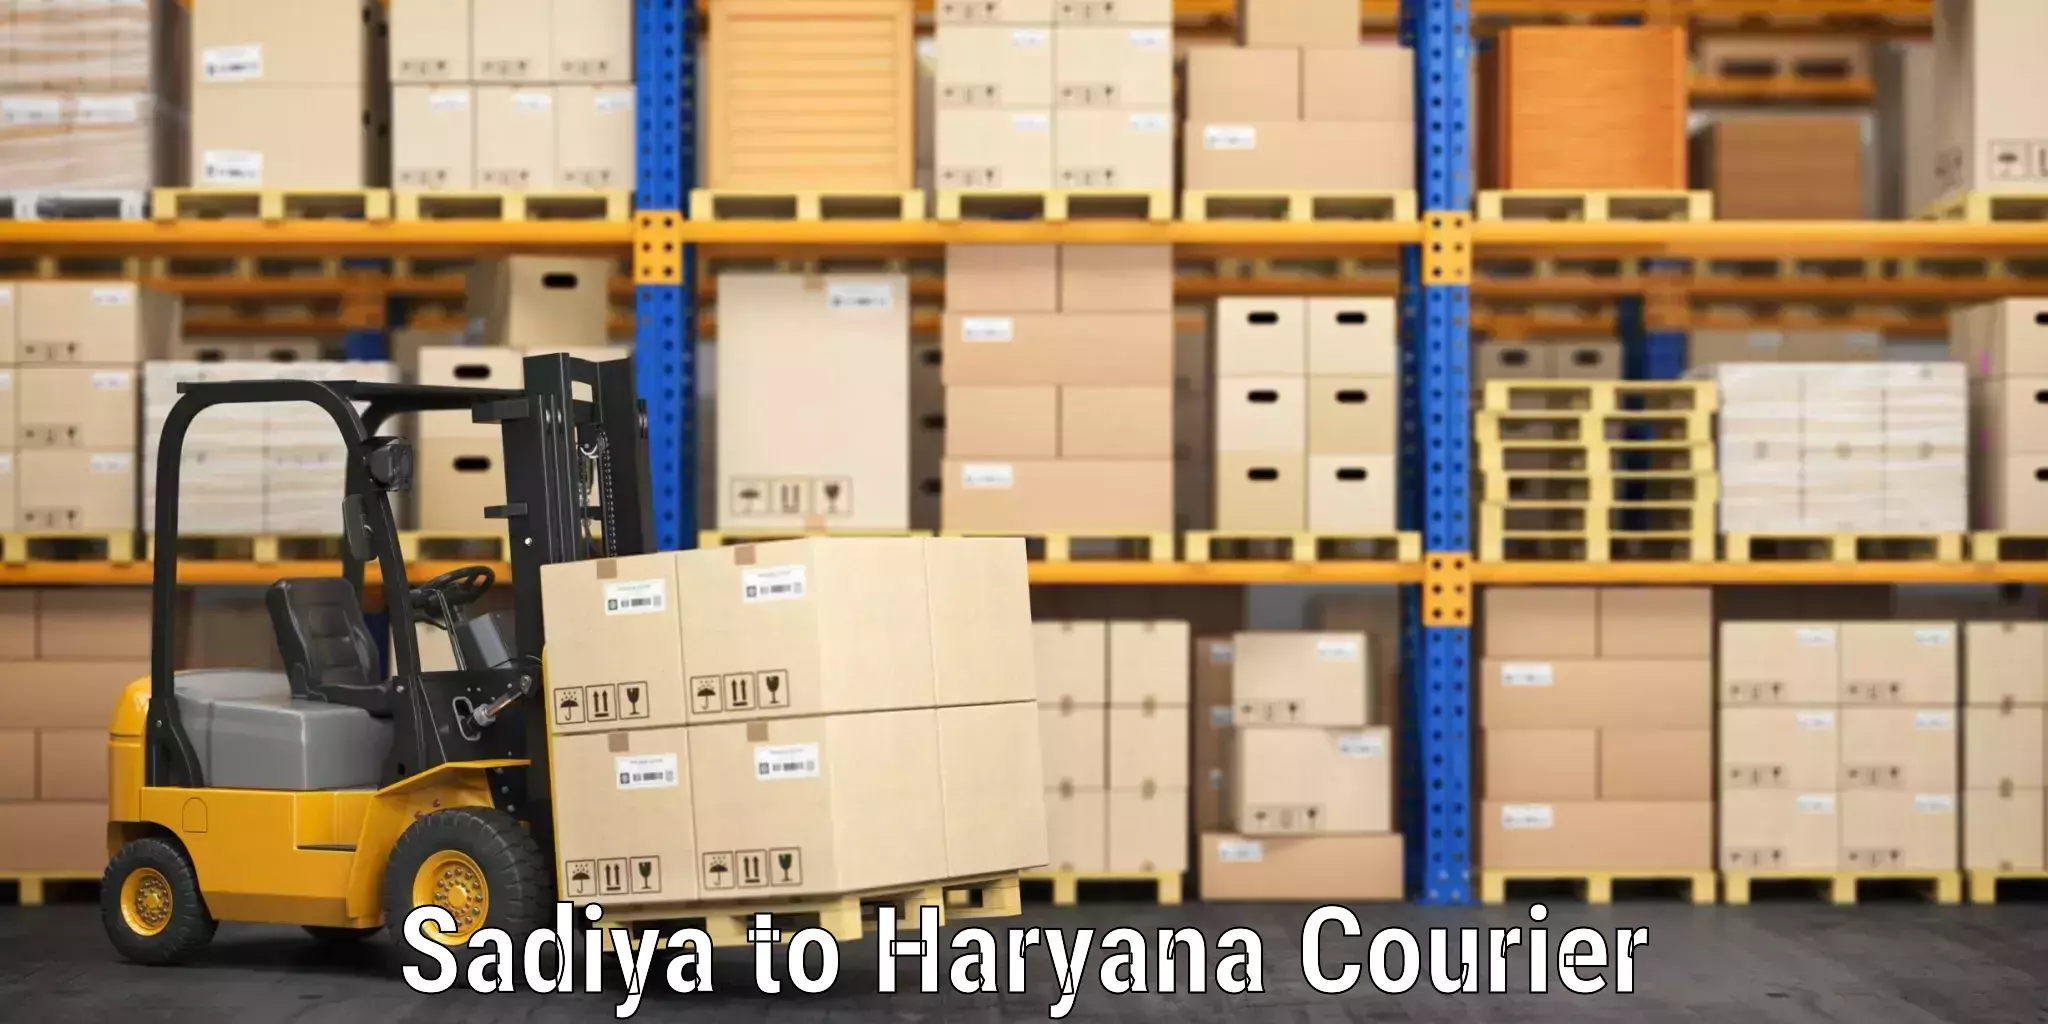 Luggage shipment tracking Sadiya to Odhan